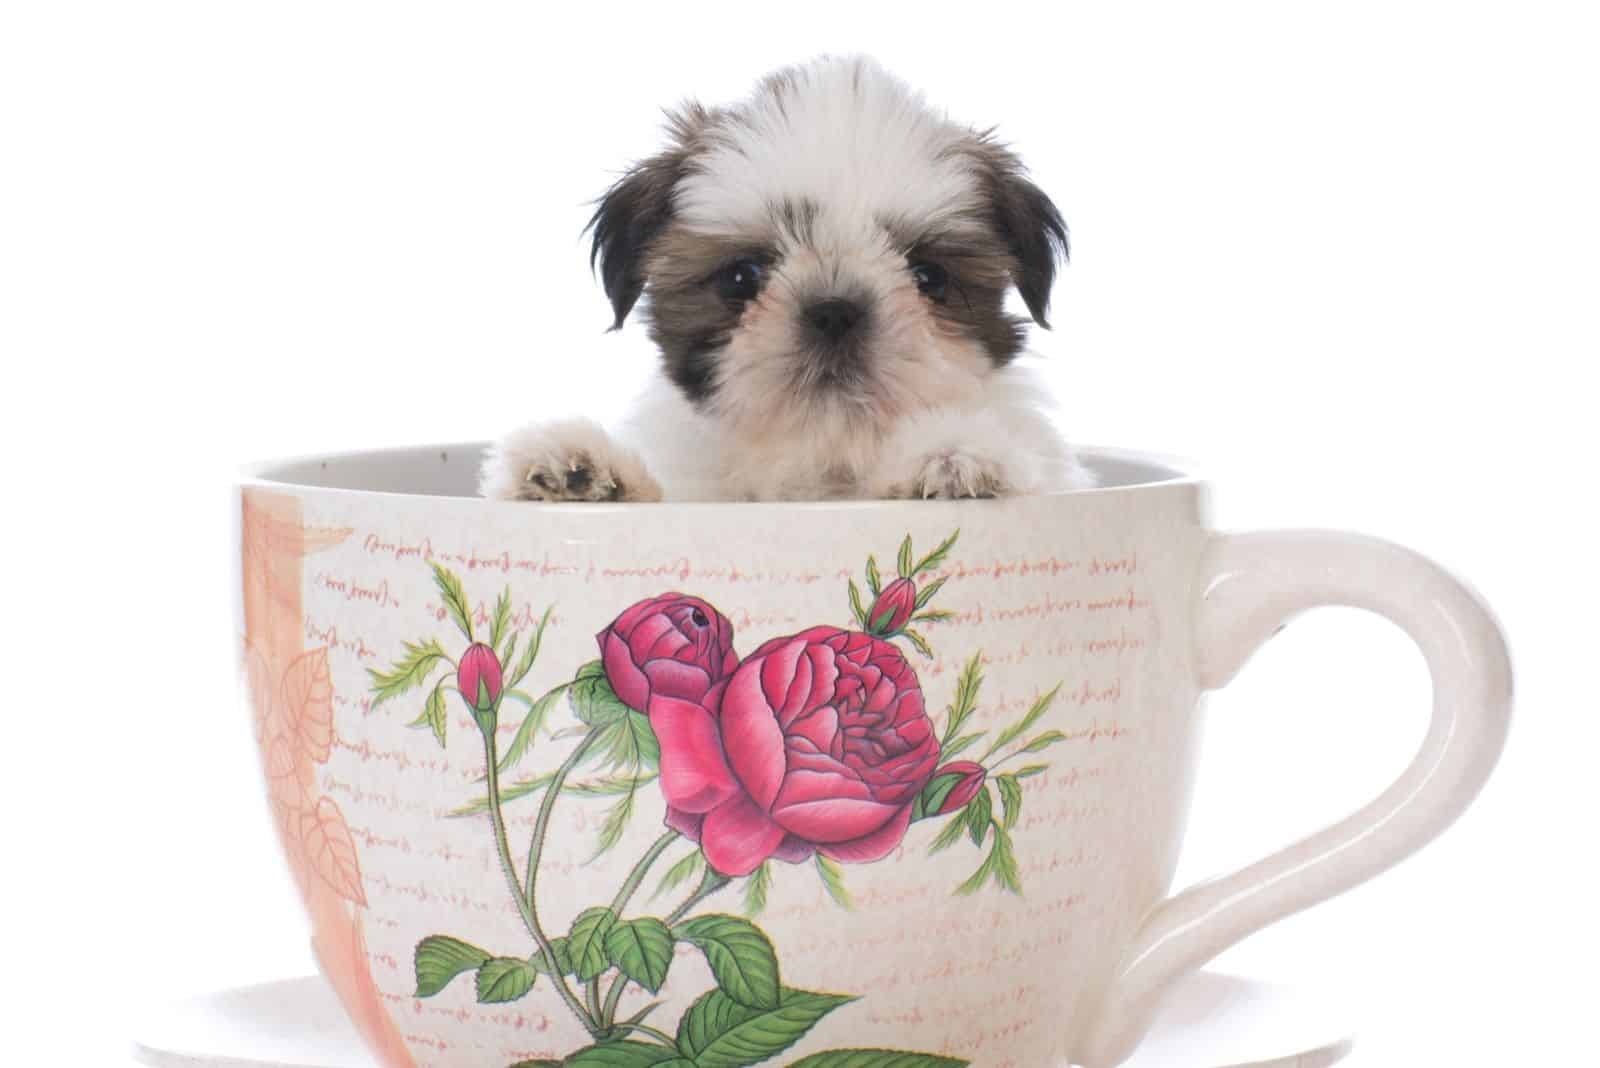 adorable shih tzu puppy inside a big tea cup